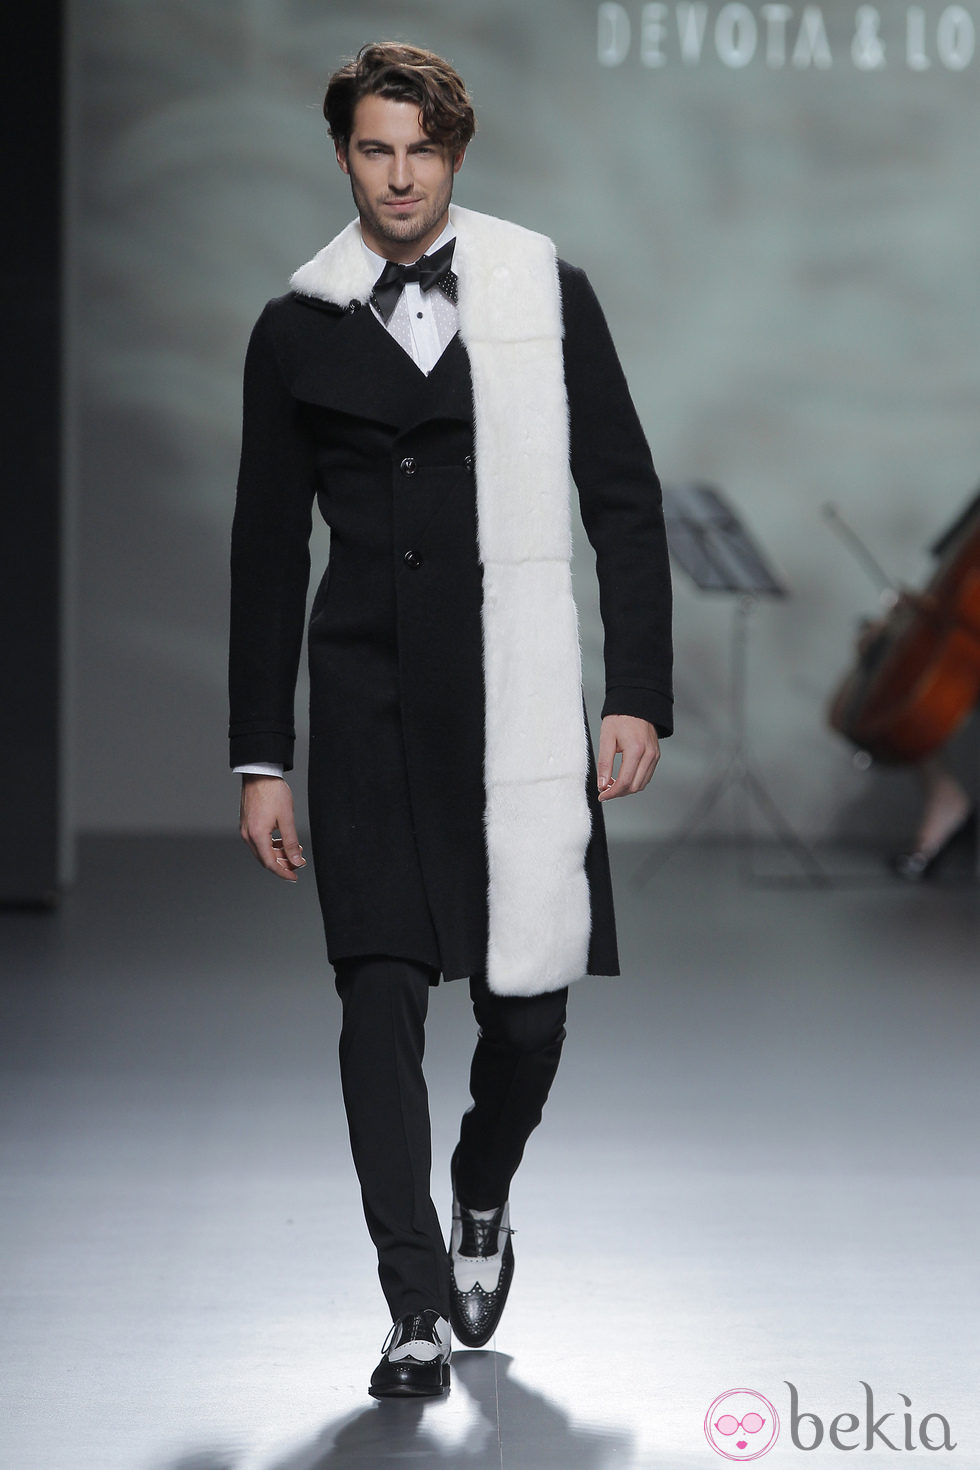 Abrigo negro con estola blanca de la colección otoño/invierno 2013/2014 de Devota & Lomba en Madrid Fashion Week